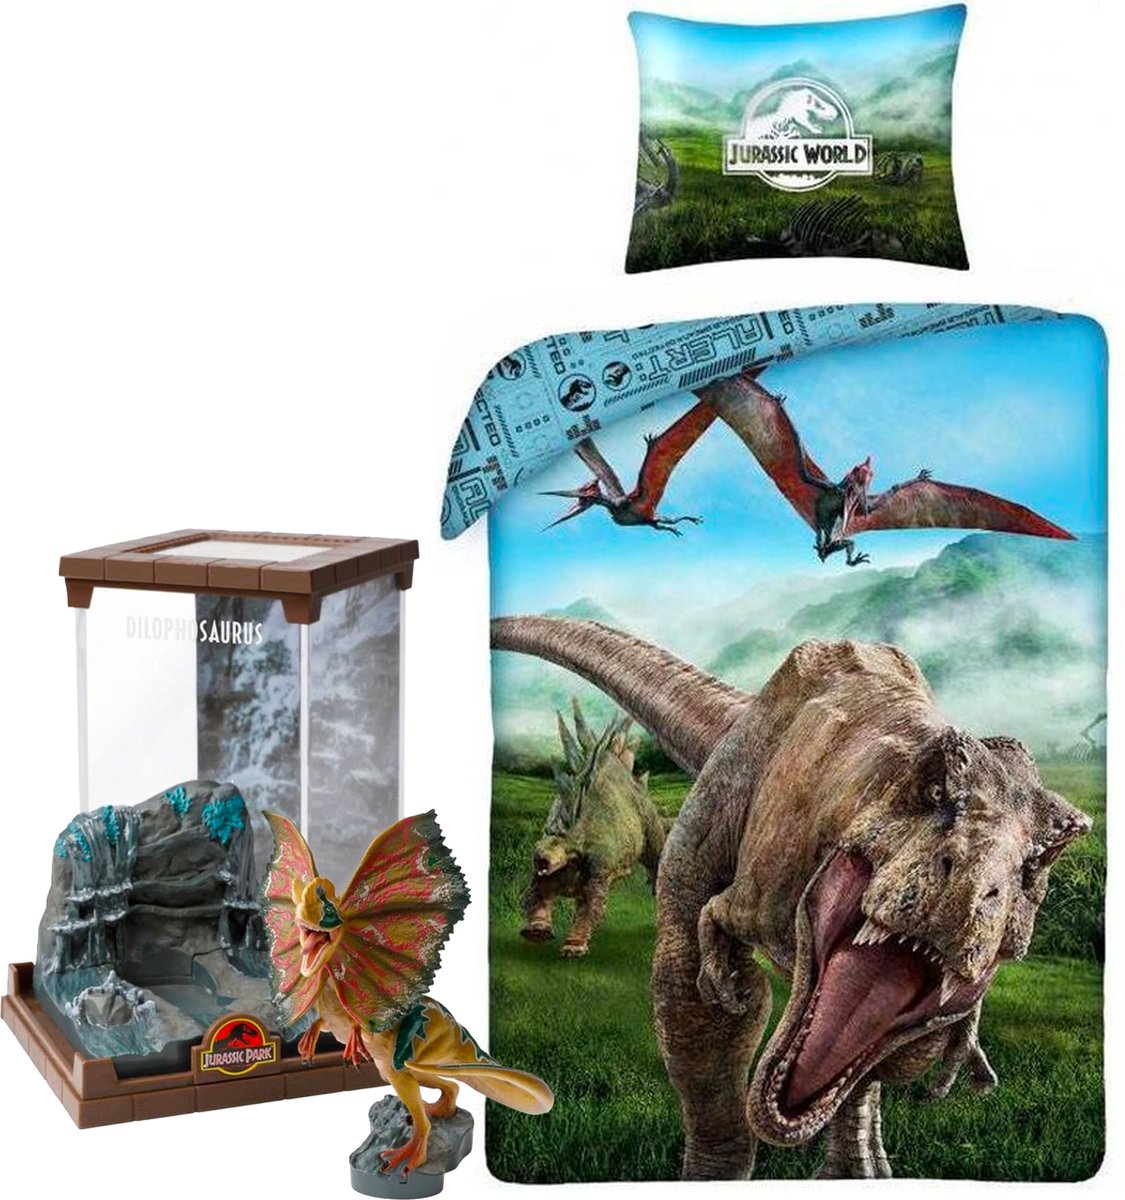 Jurassic World Dino Dekbedovertrek- 140x200- Katoen- 1persoons- Dinosaurus- incl. Jurassic World Dilophosaurus figurine